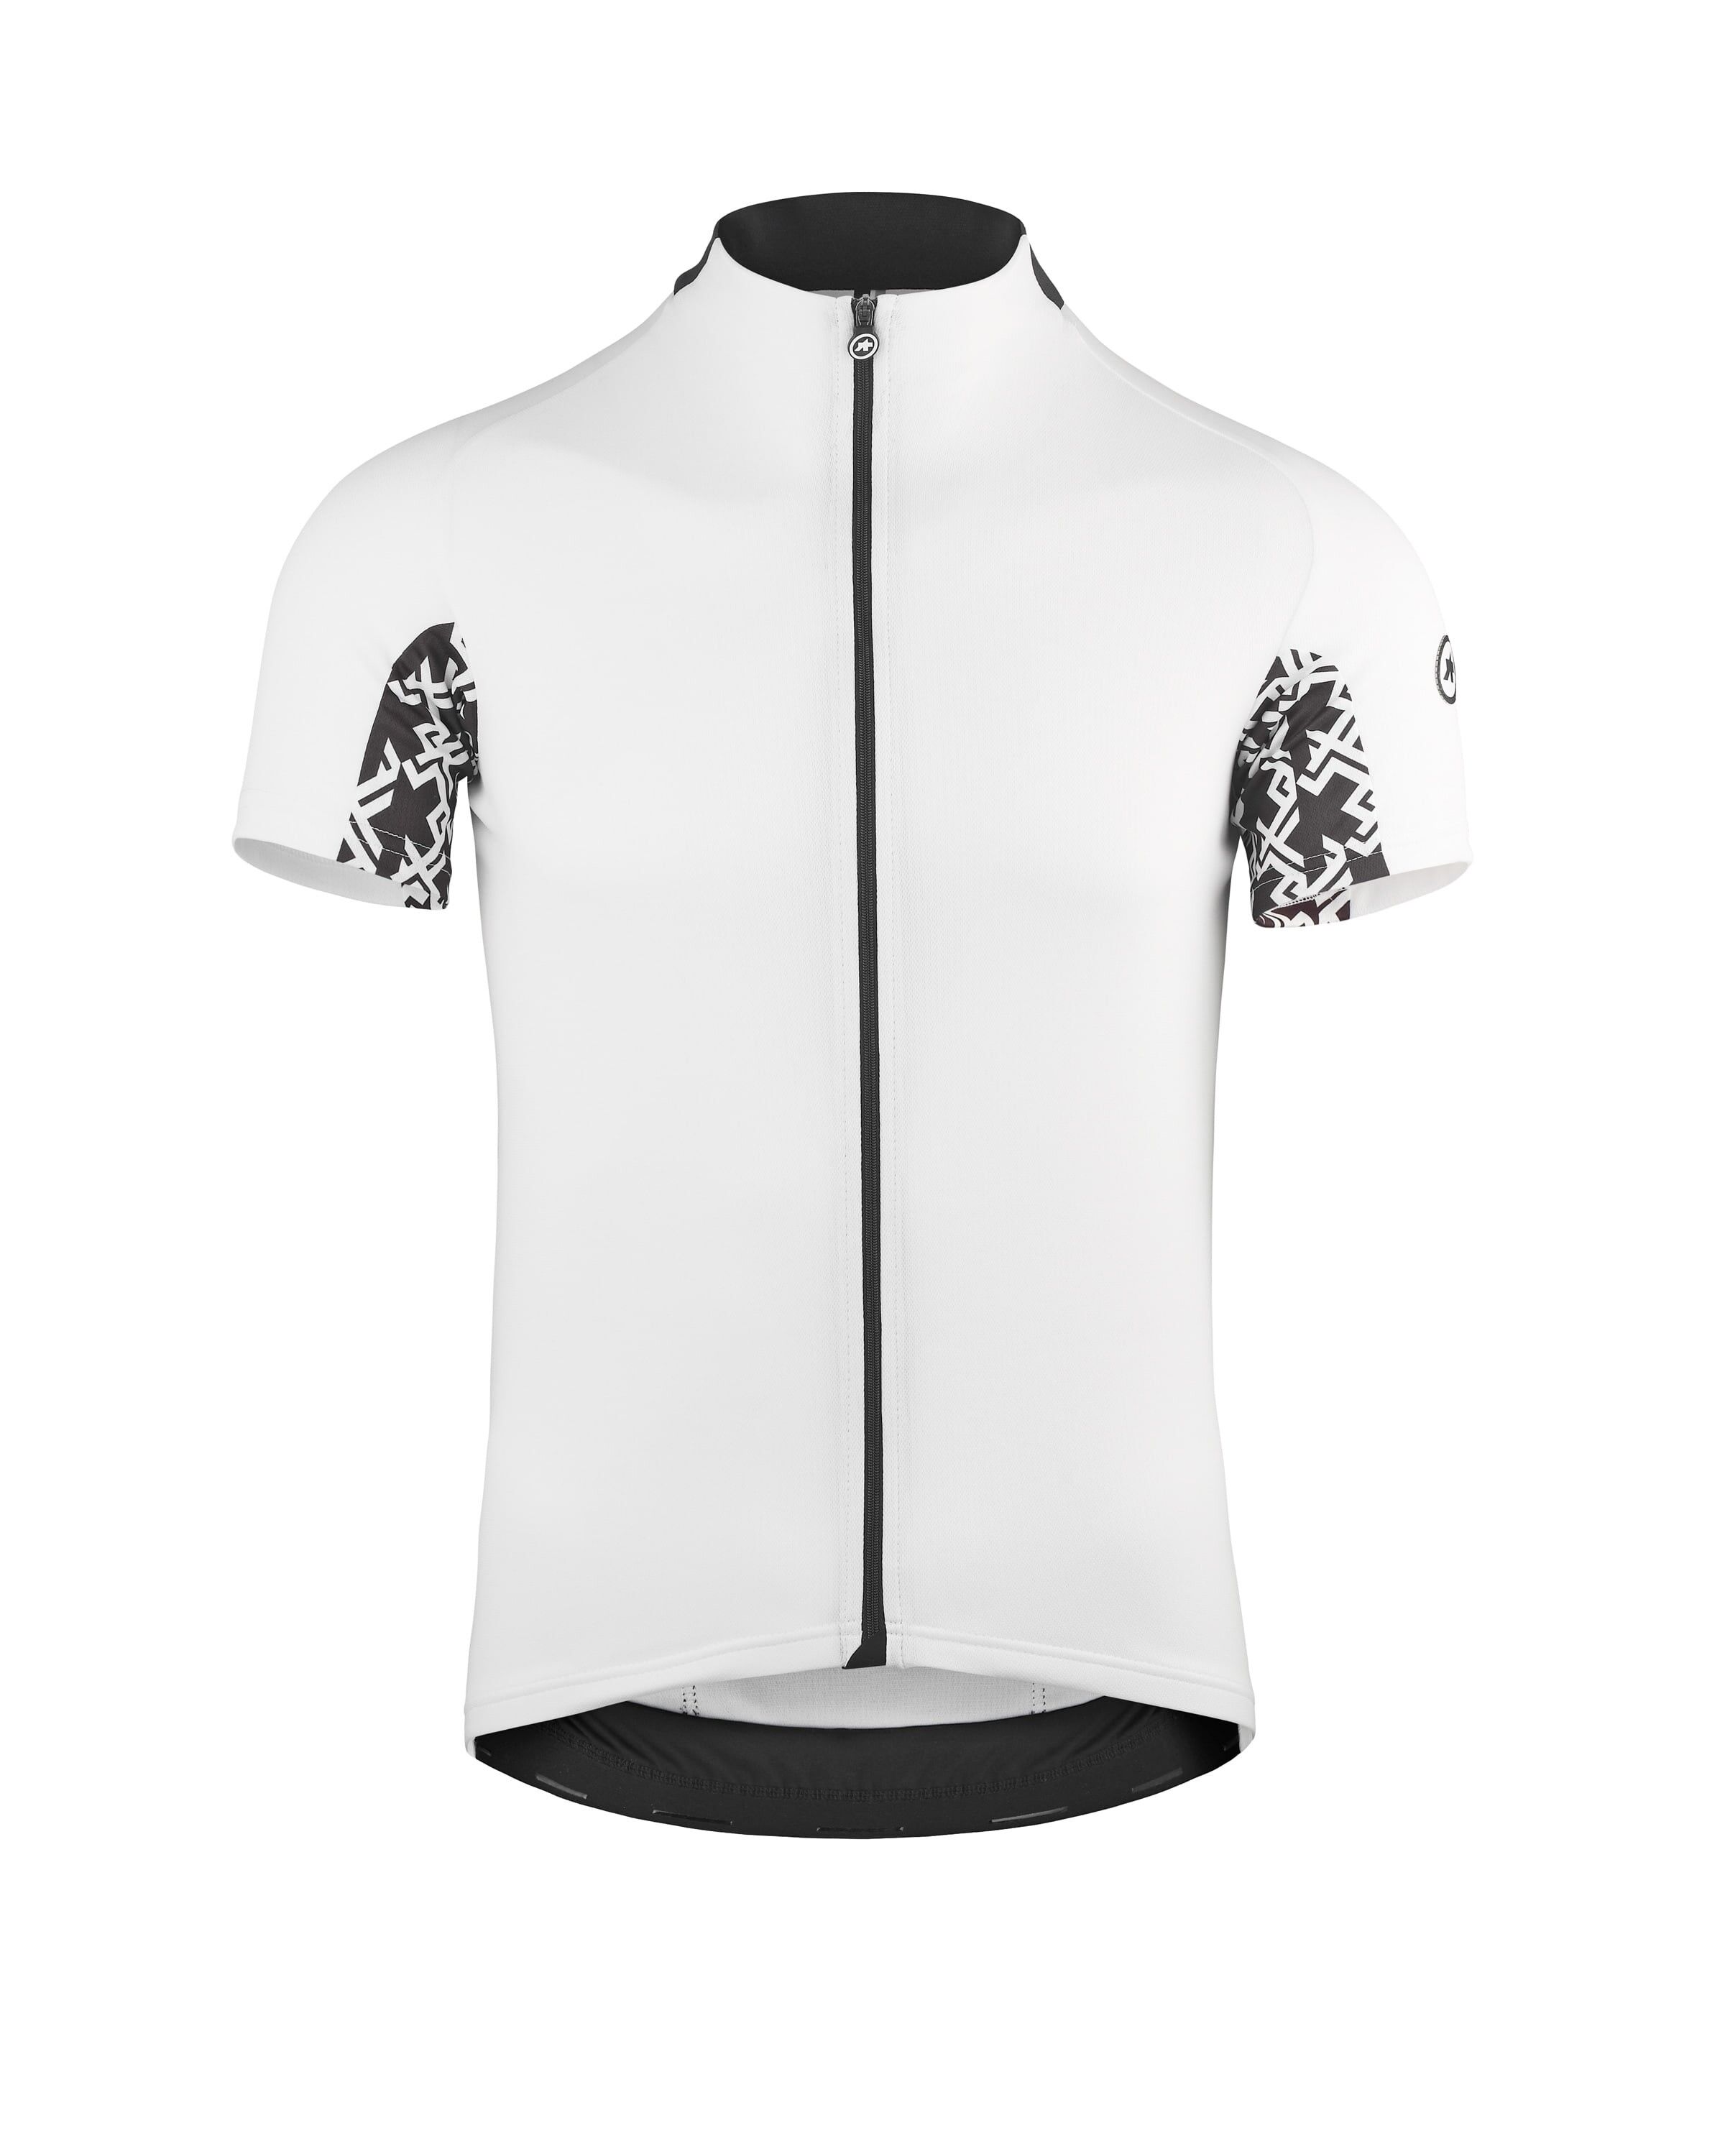 Assos Mille GT Short Sleeve Jersey - Cycling jersey - Men's